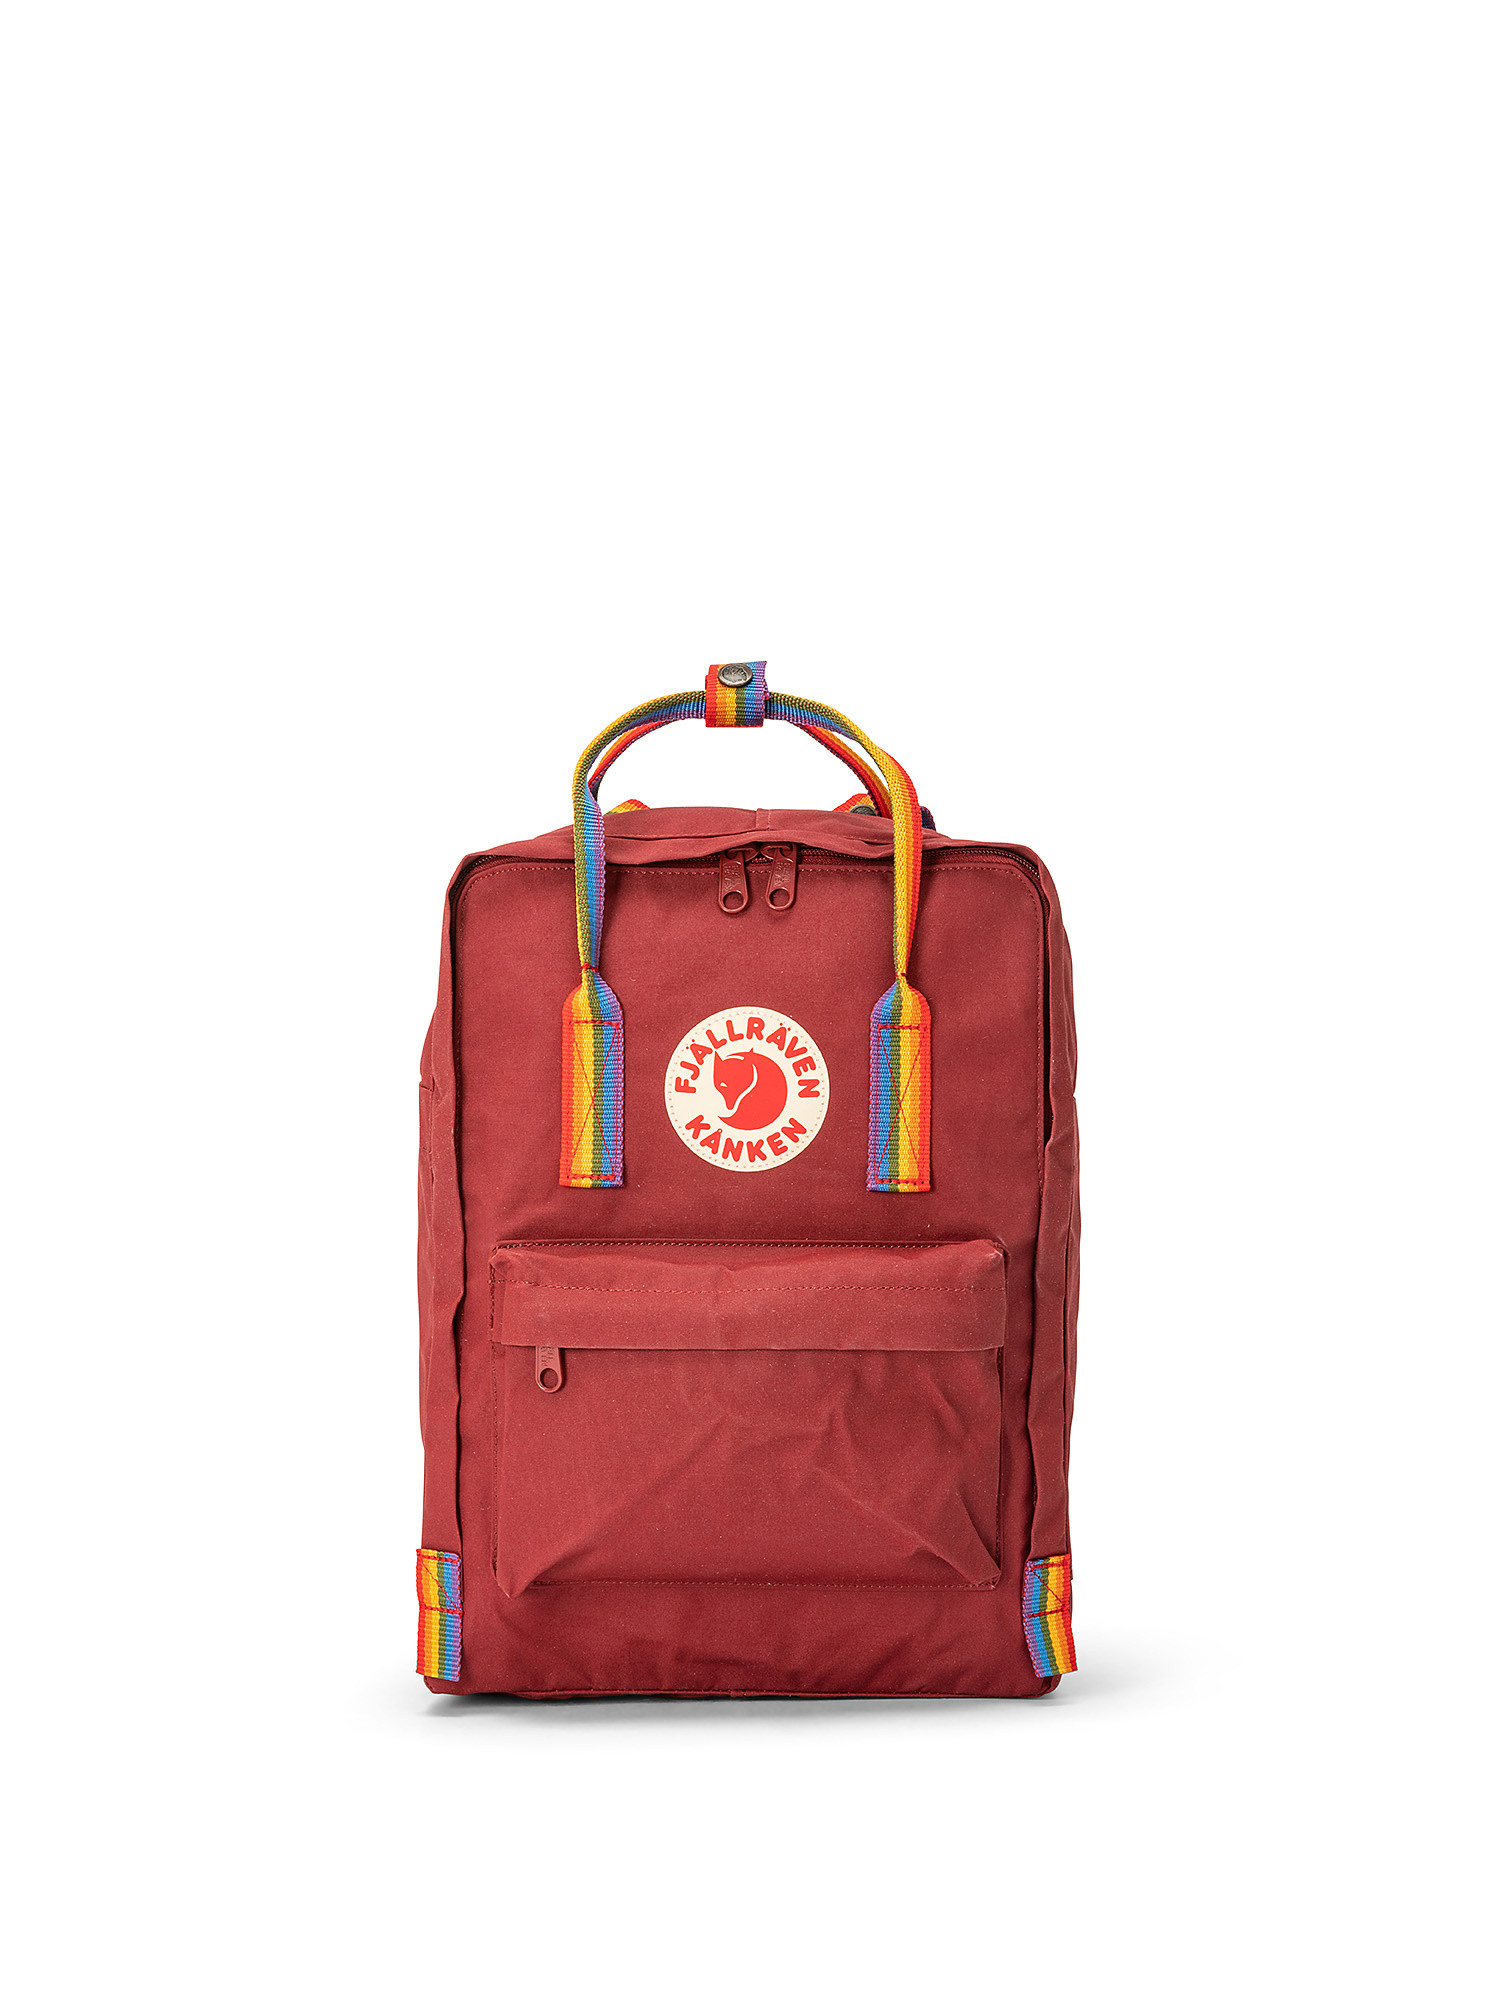 Backpack with adjustable shoulder straps, Red, large image number 0